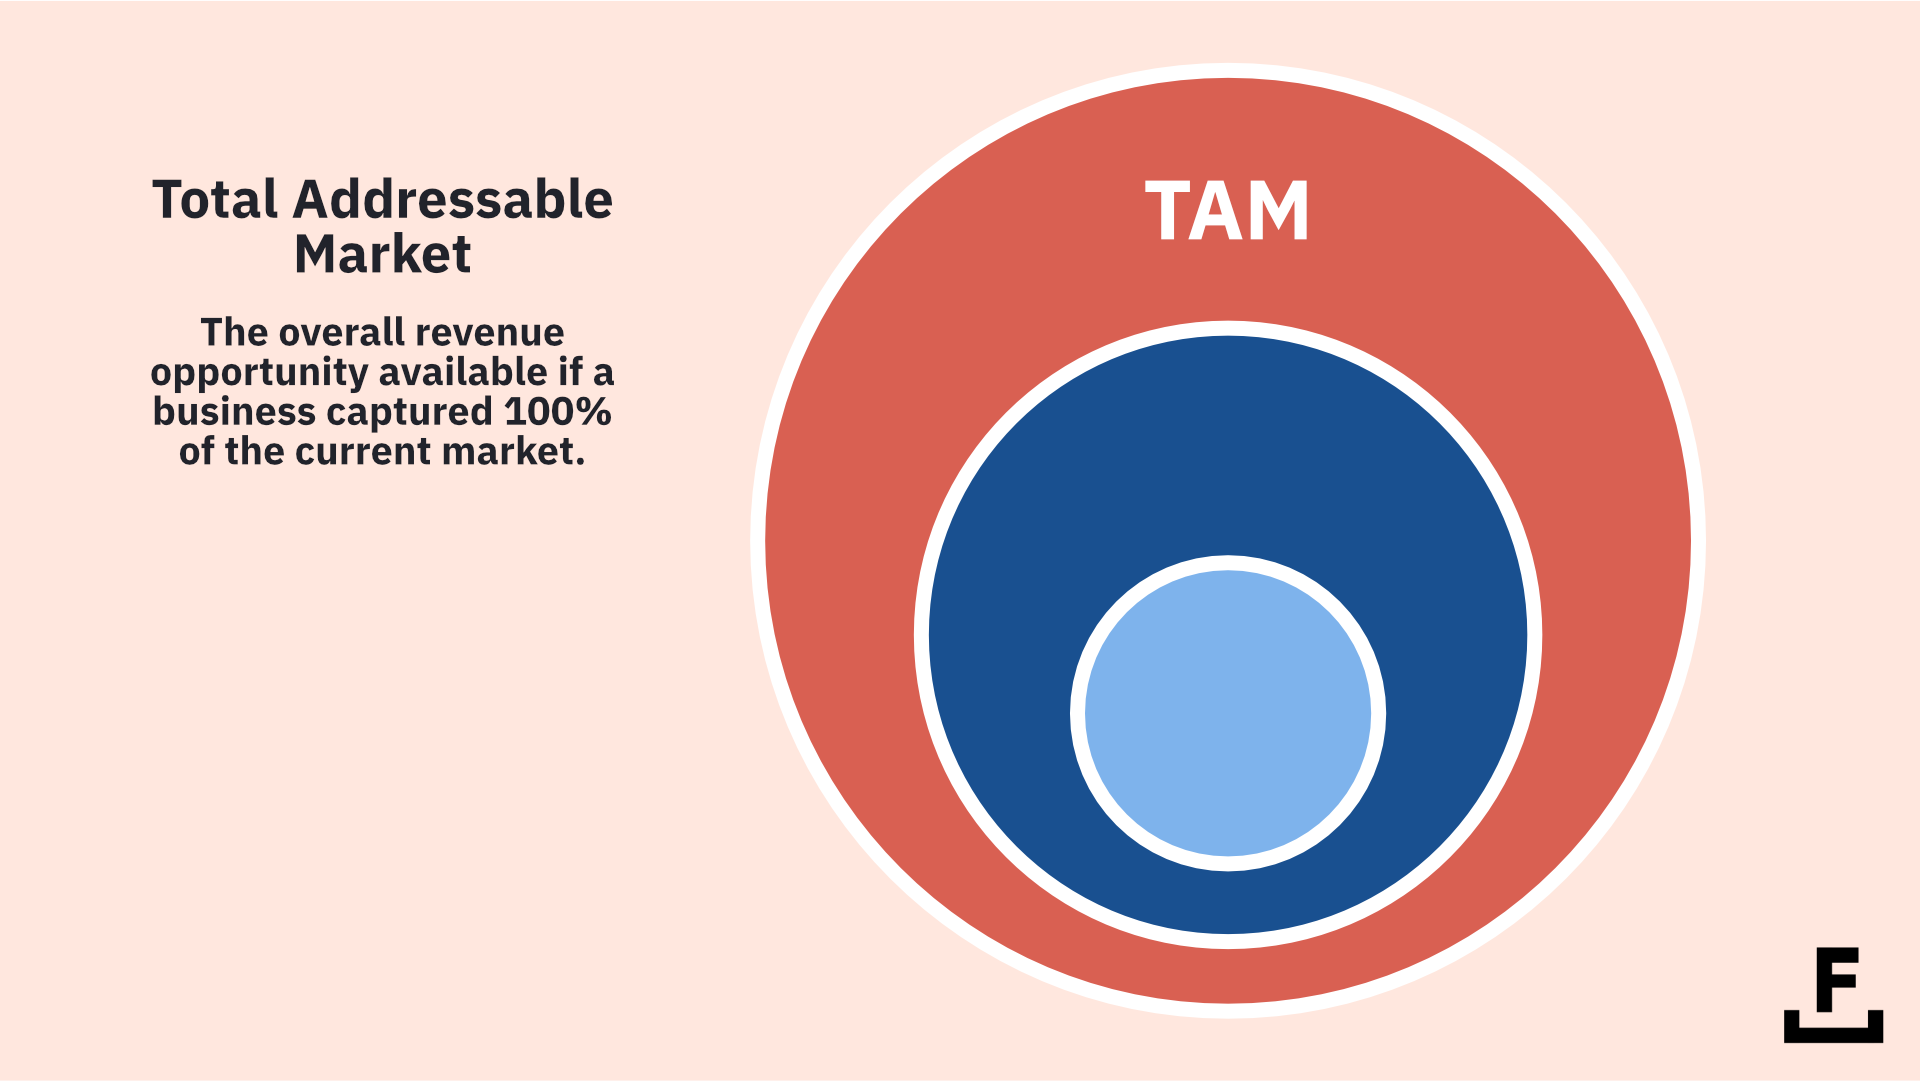 A diagram explaining what Total Addressable Market (TAM) means